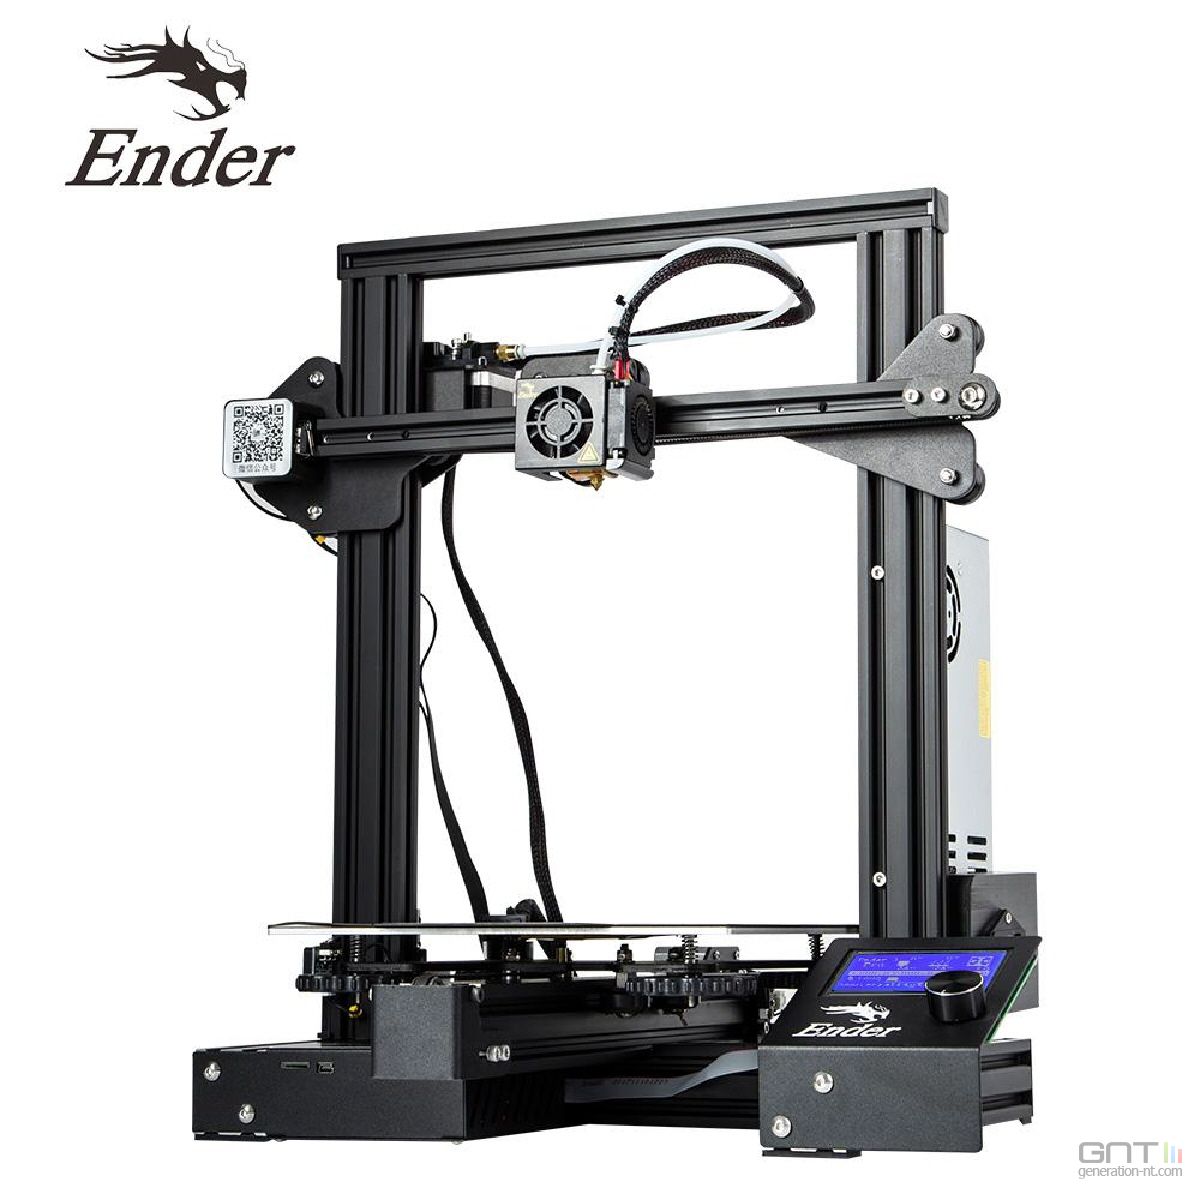 Bon plan : les imprimantes 3D Ender 3 Pro et CR-10 V2 de Creality